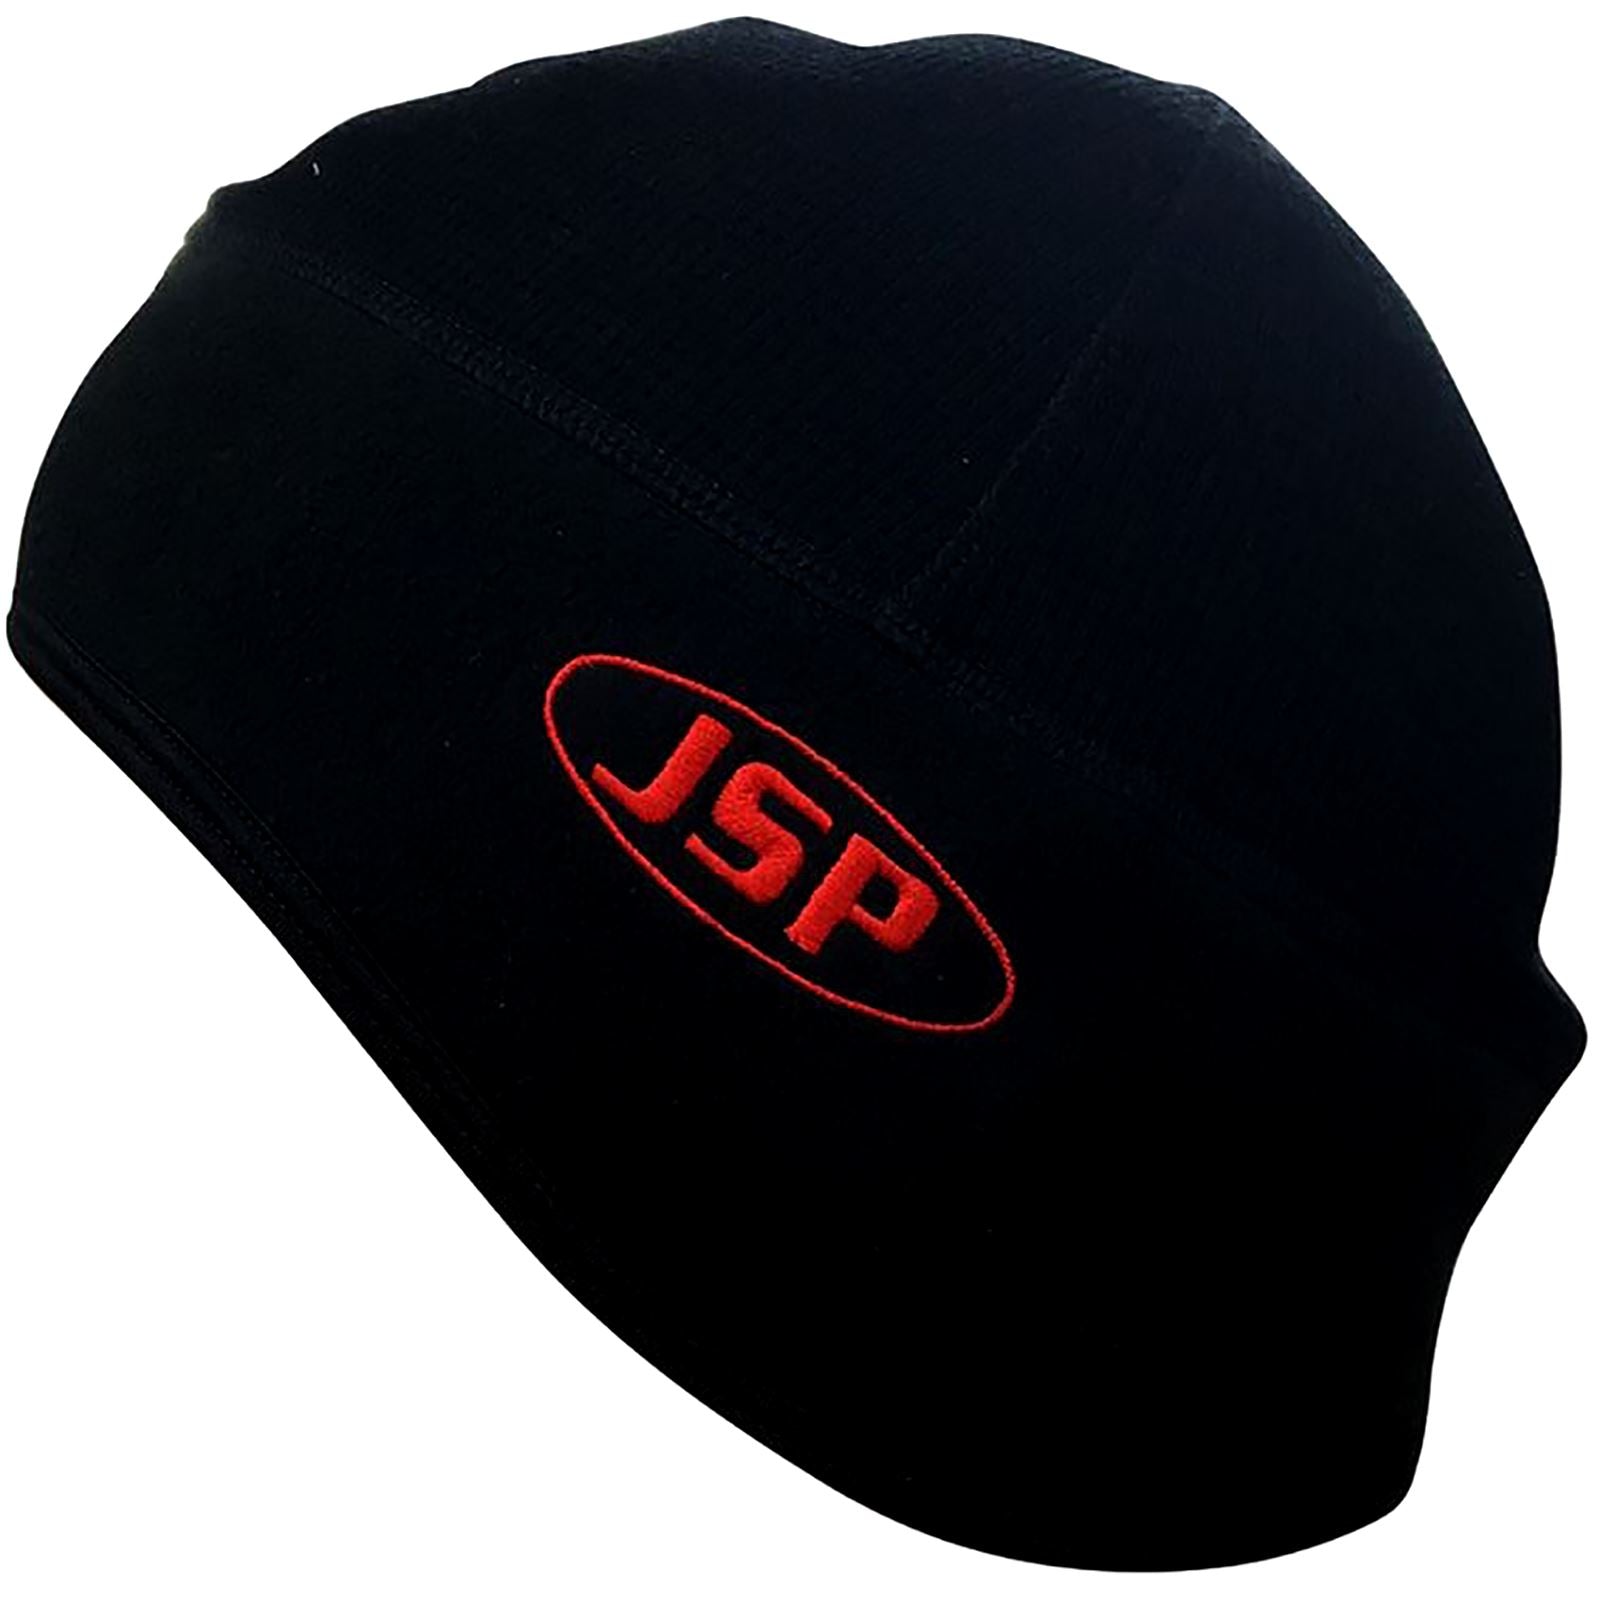 JSP Surefit Thermal Hard Hat Helmet Liner Black Beanie Large/Extra Large